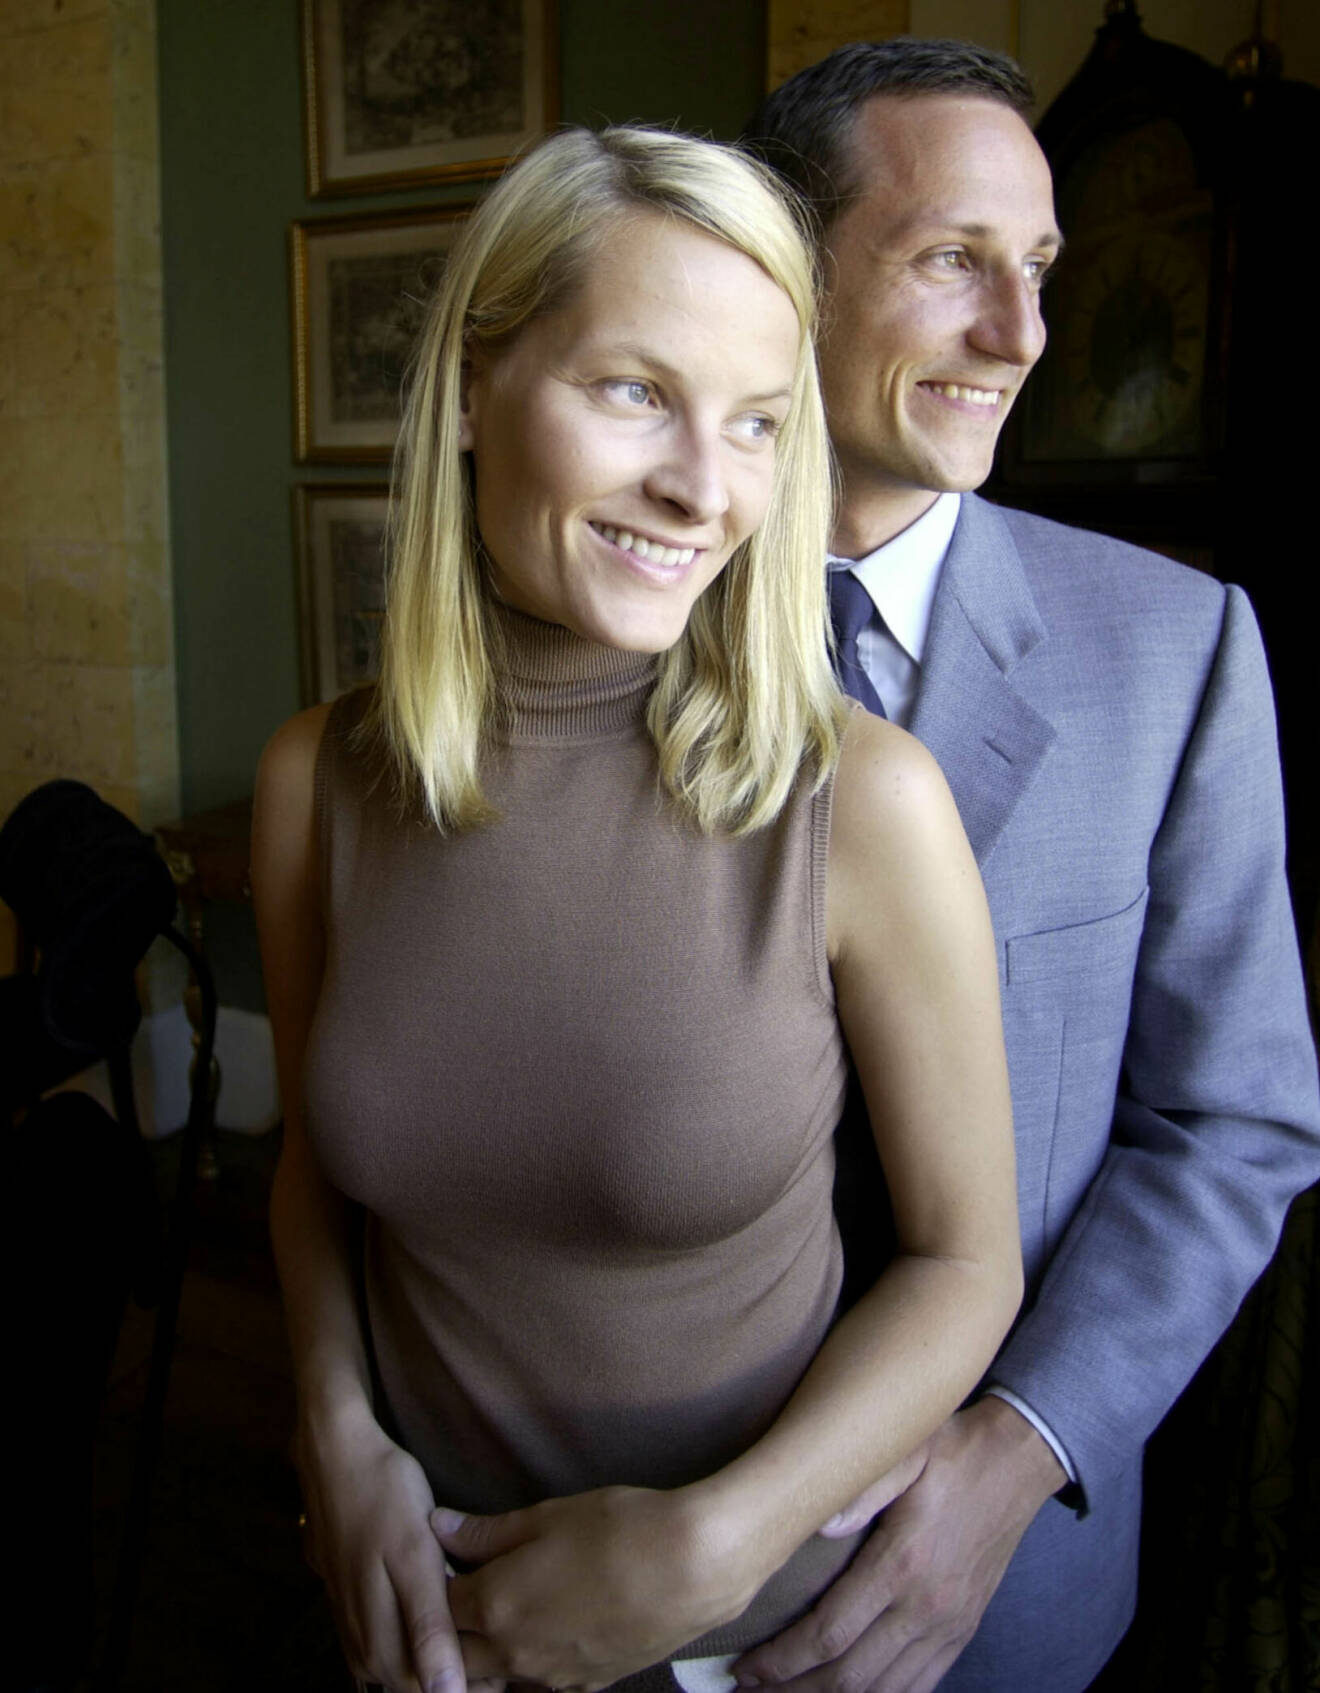 Kronprins Haakon med kronprinsessan Mette-Marit som ogift när hon hette Tjessem Höiby